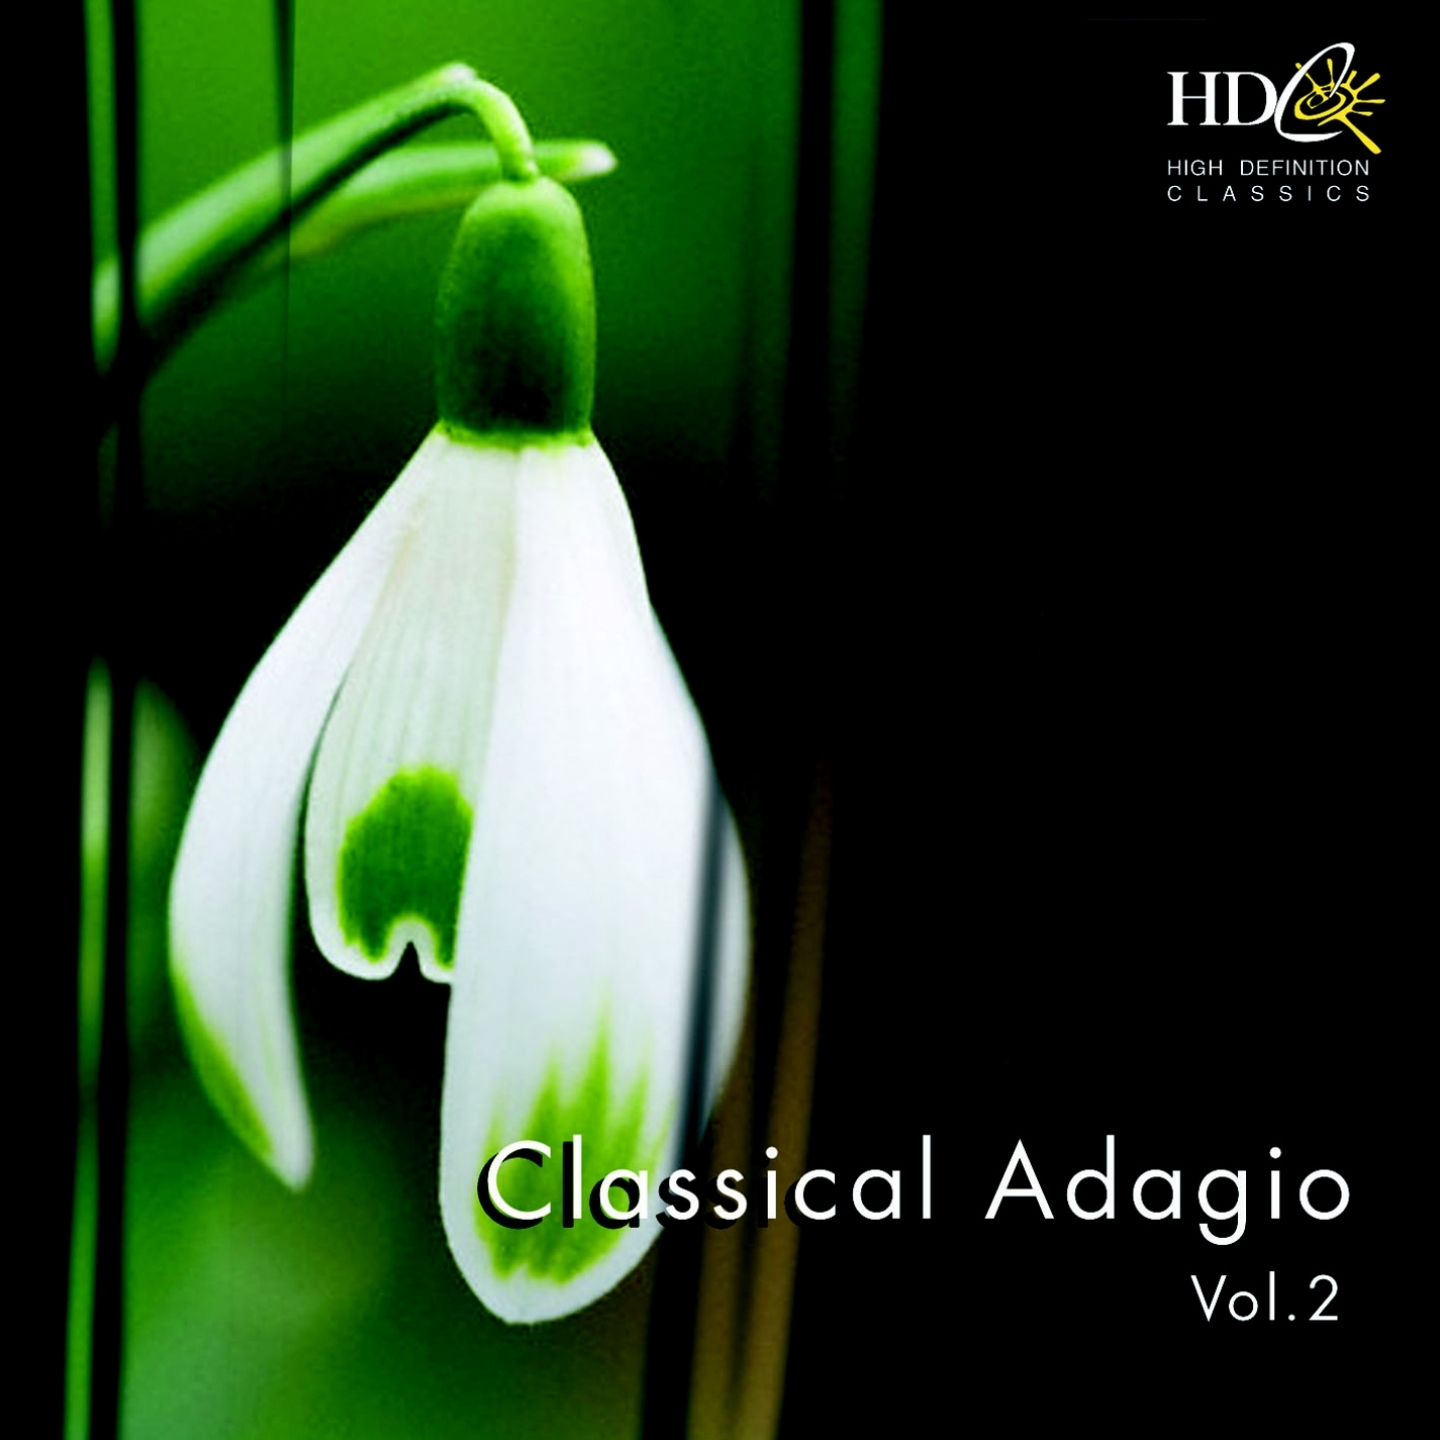 Classical Adagio, Vol. 2